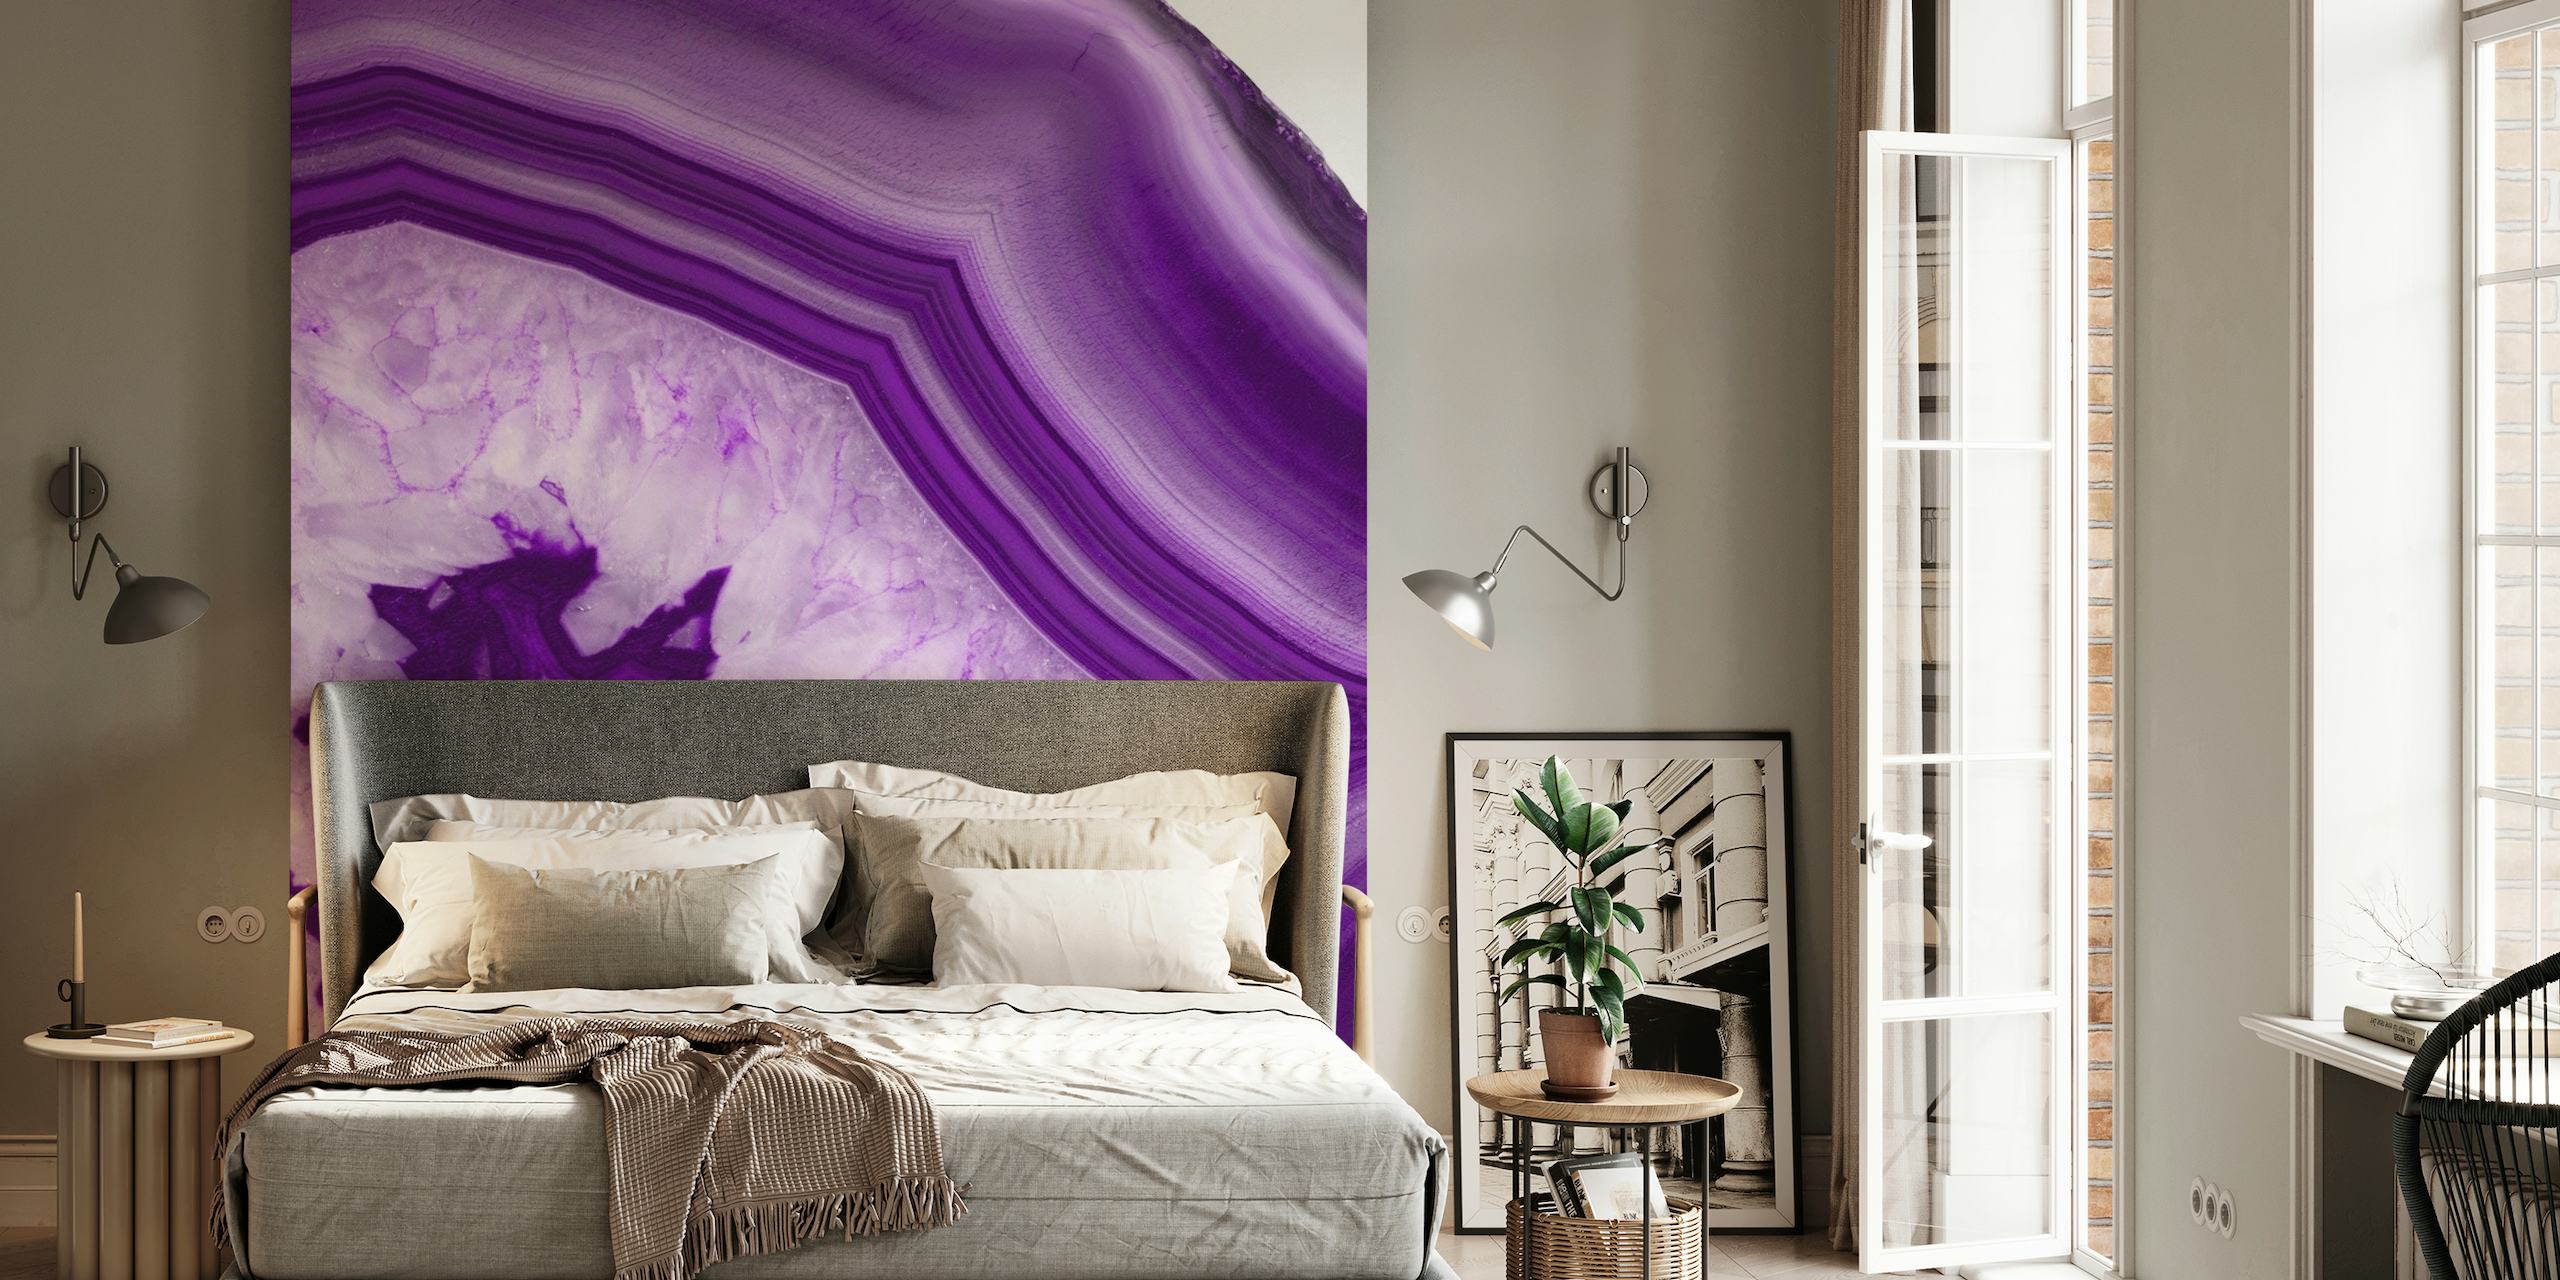 Muurschildering in paars agaatsteenpatroon met levendige paarse en witte banden